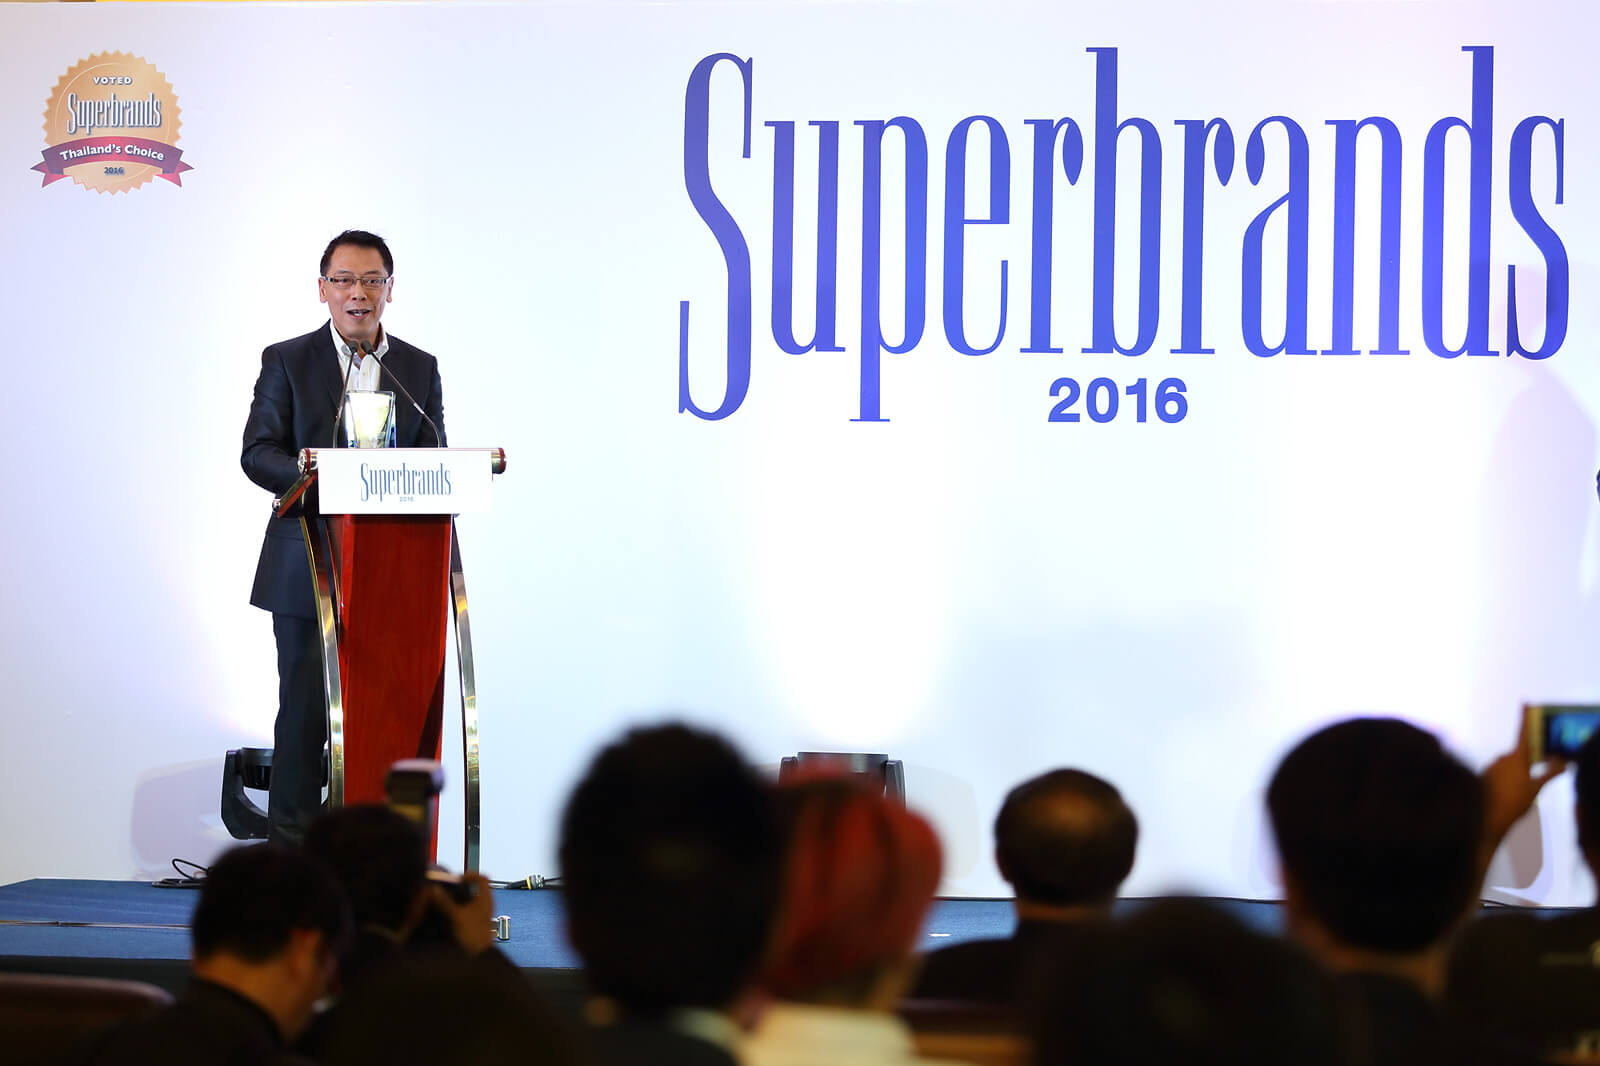 05 ยามาฮ่ารับรางวัล “Superbrands Thailand 2016”